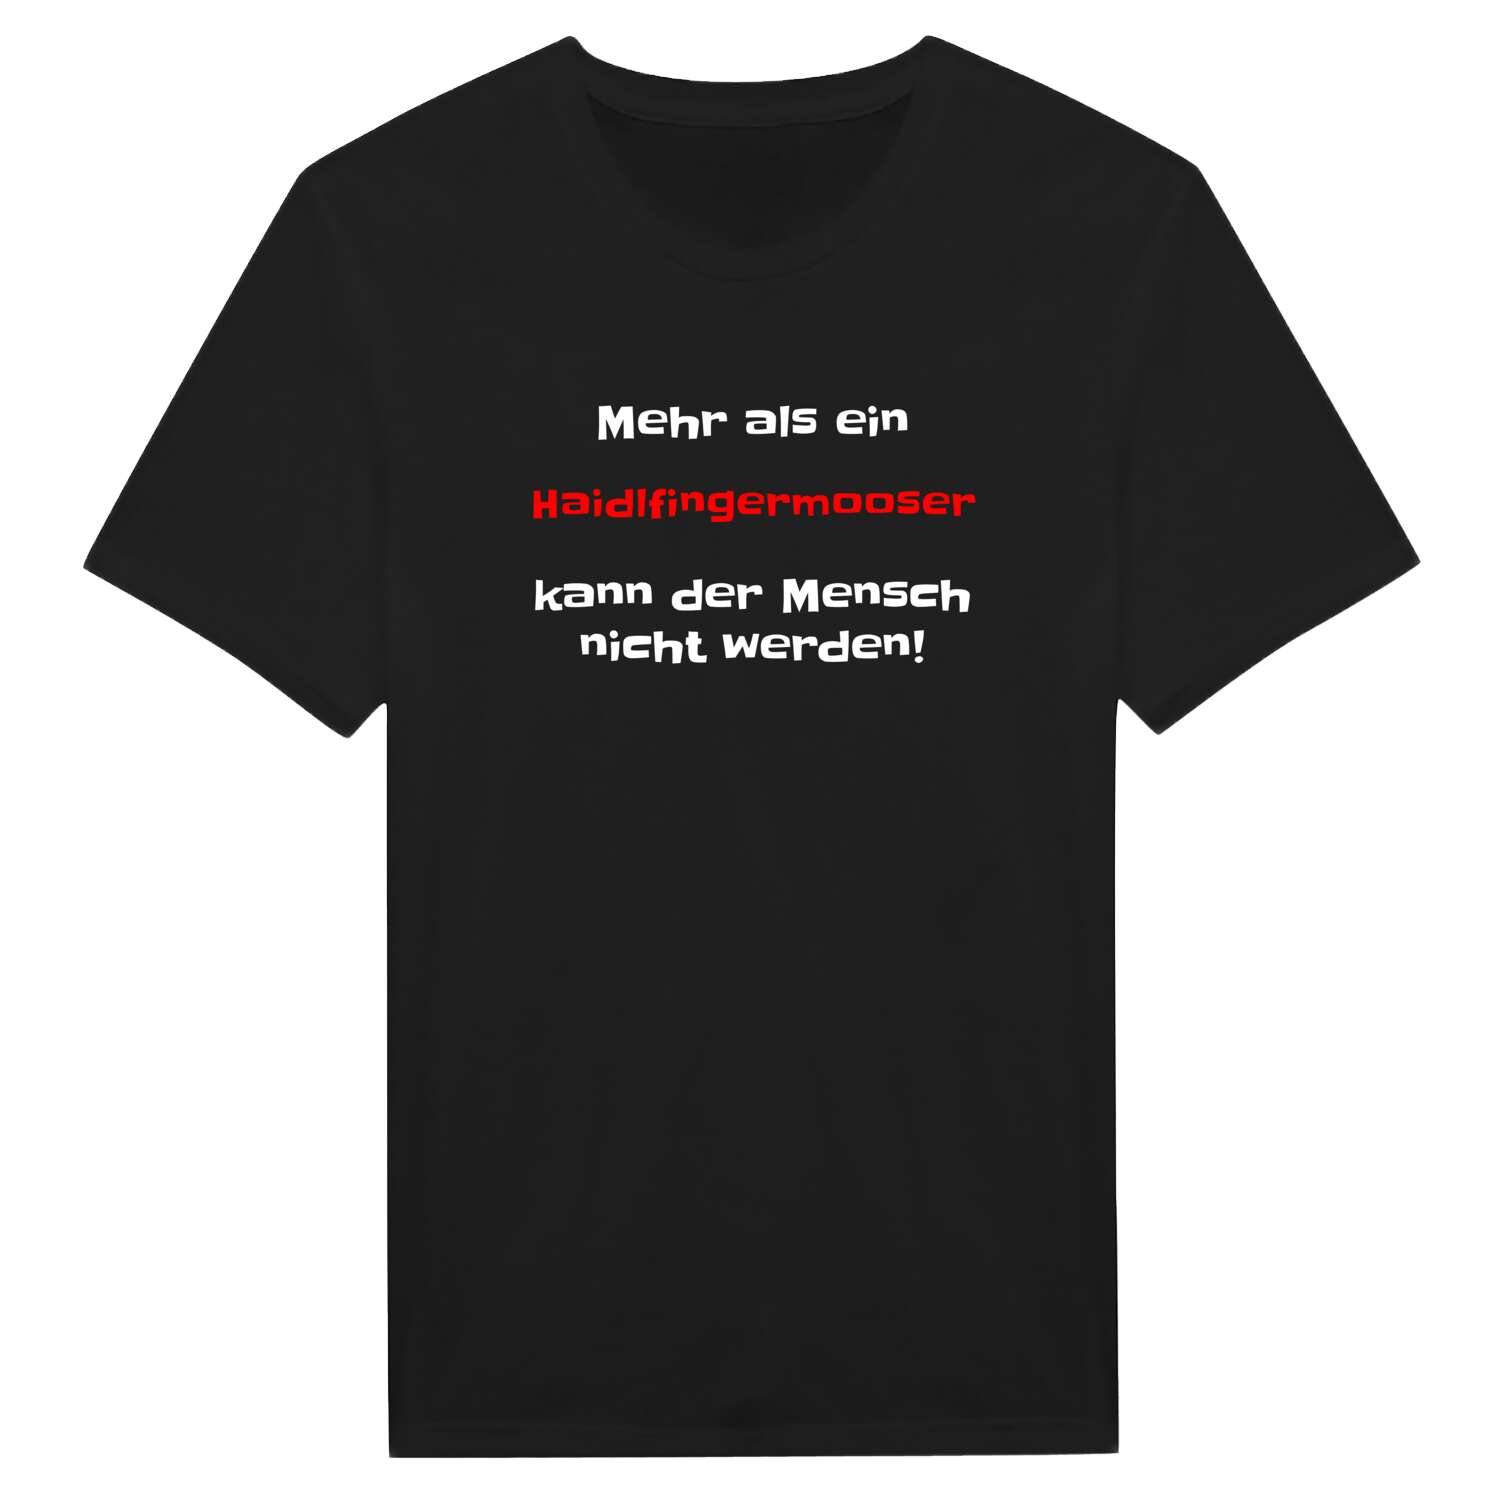 Haidlfingermoos T-Shirt »Mehr als ein«